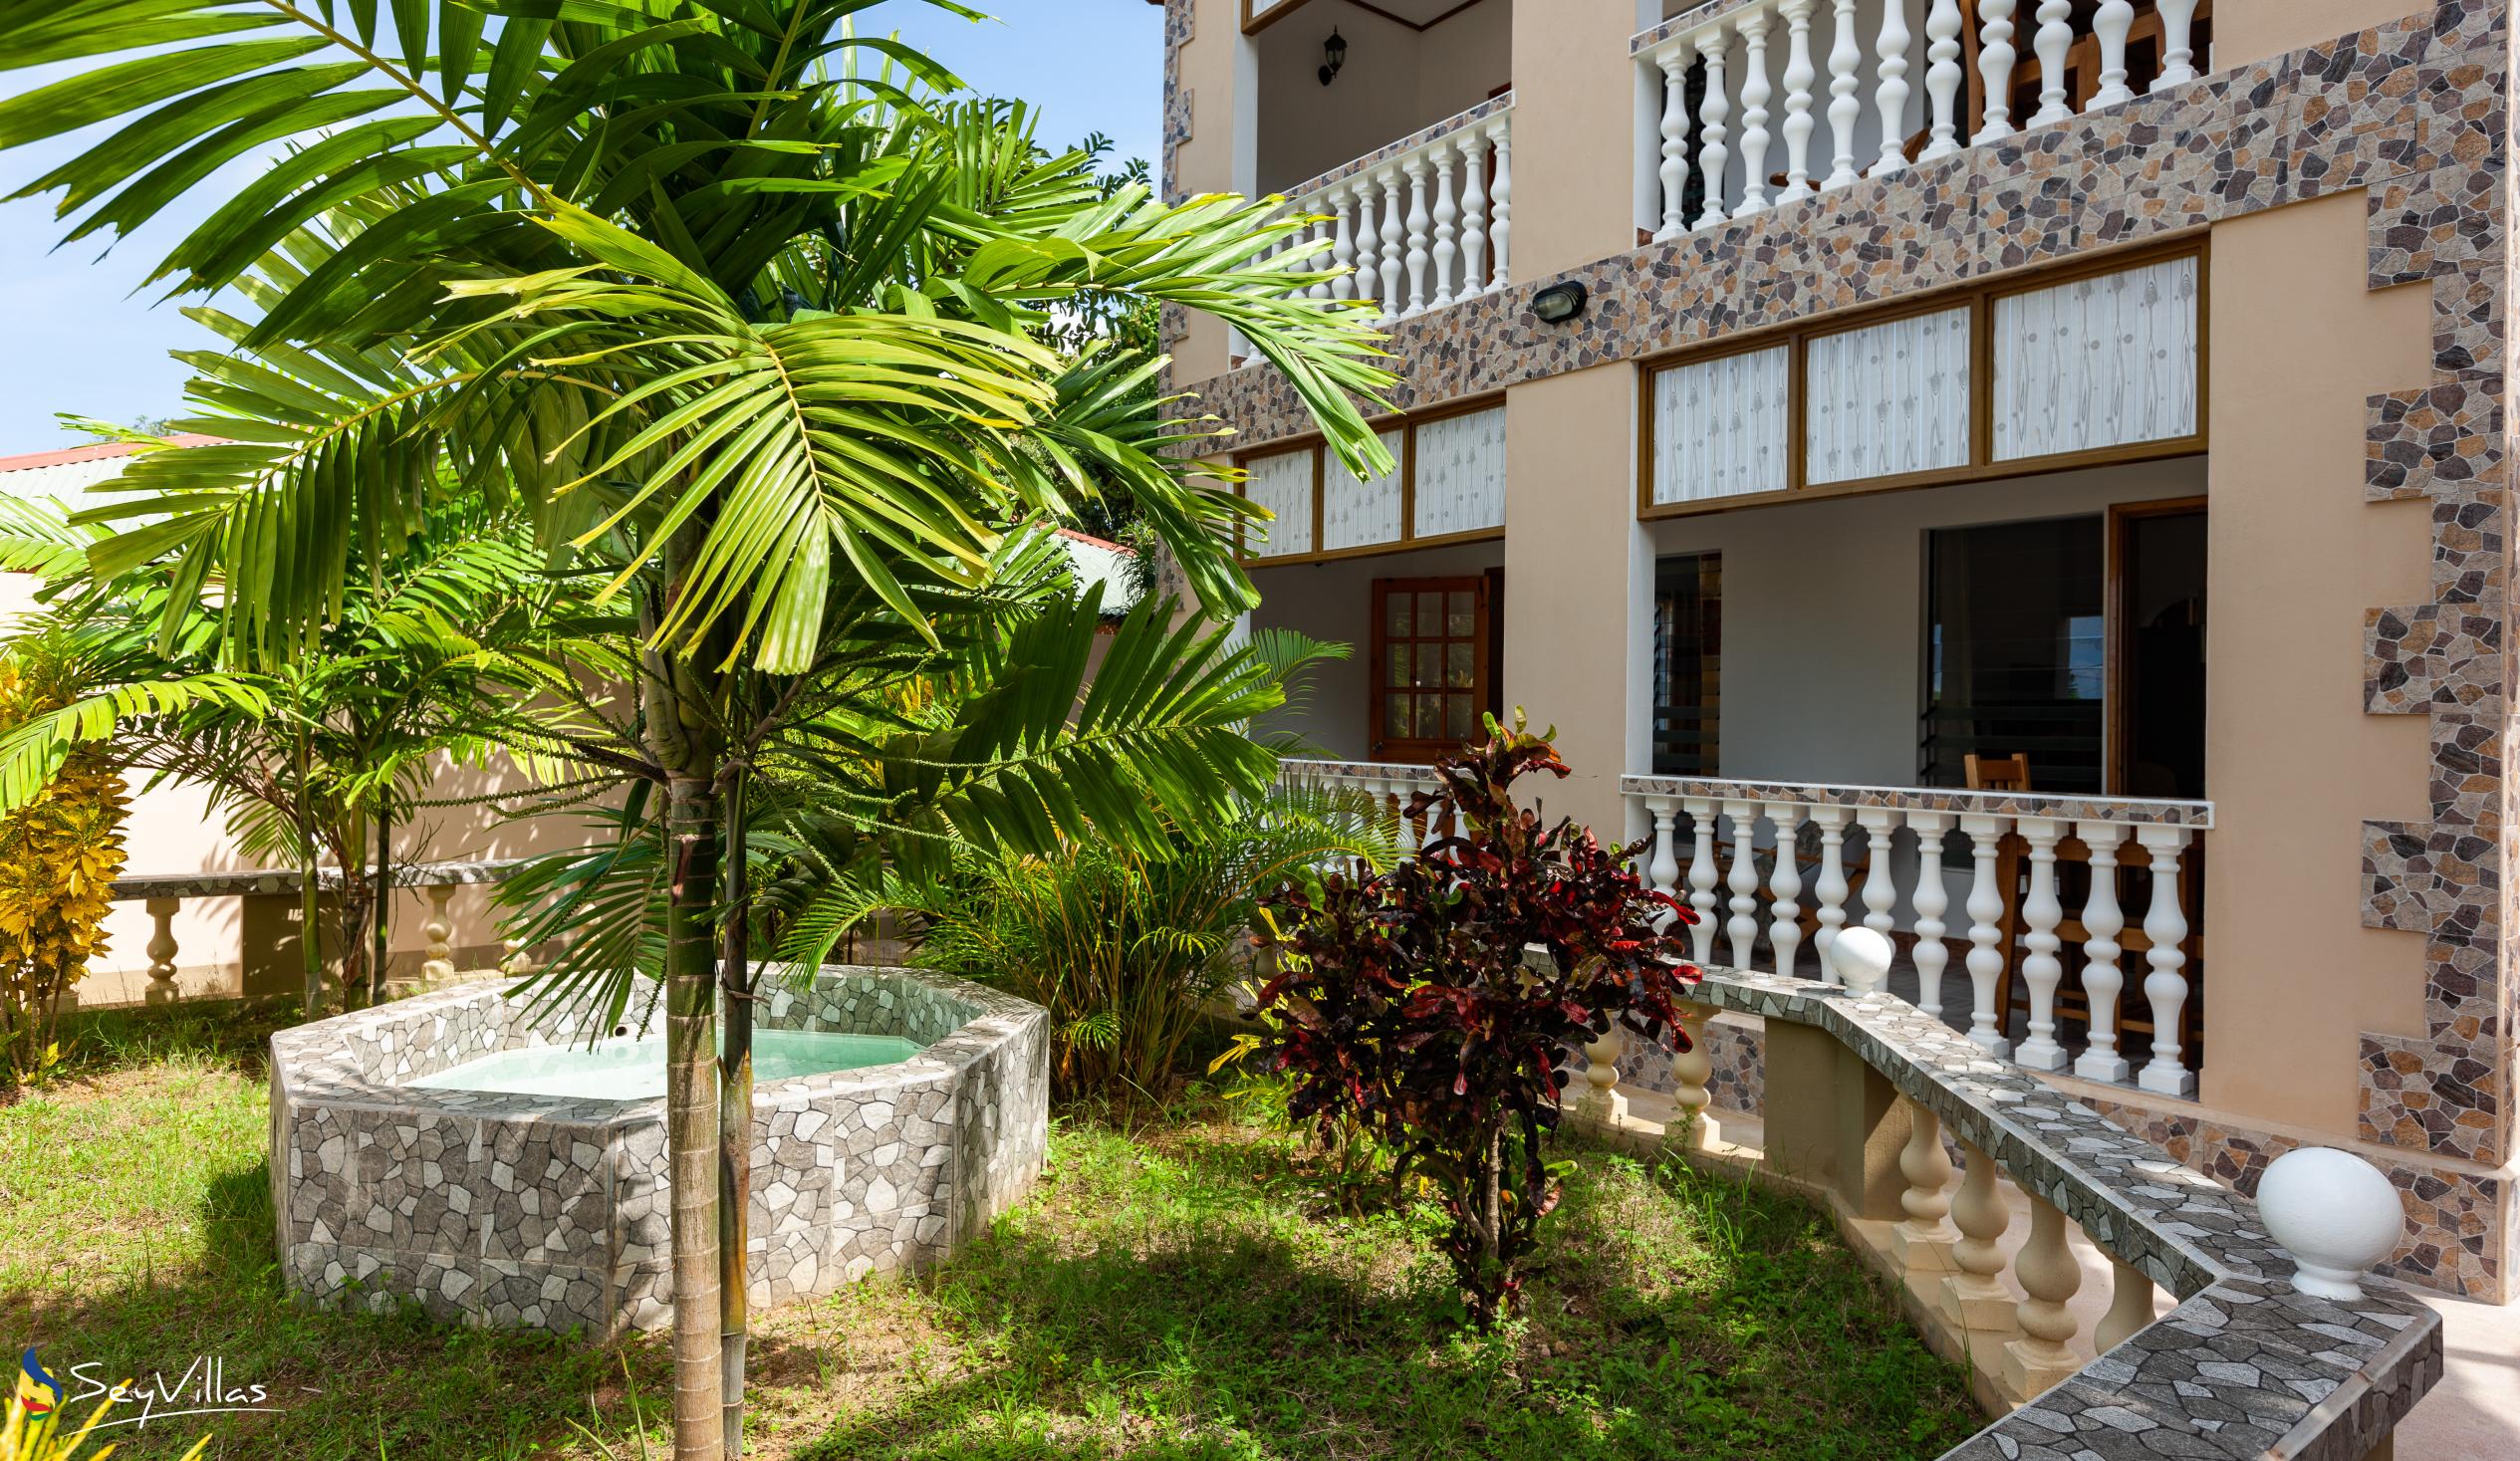 Foto 13: La Residence d'Almee - Aussenbereich - Praslin (Seychellen)